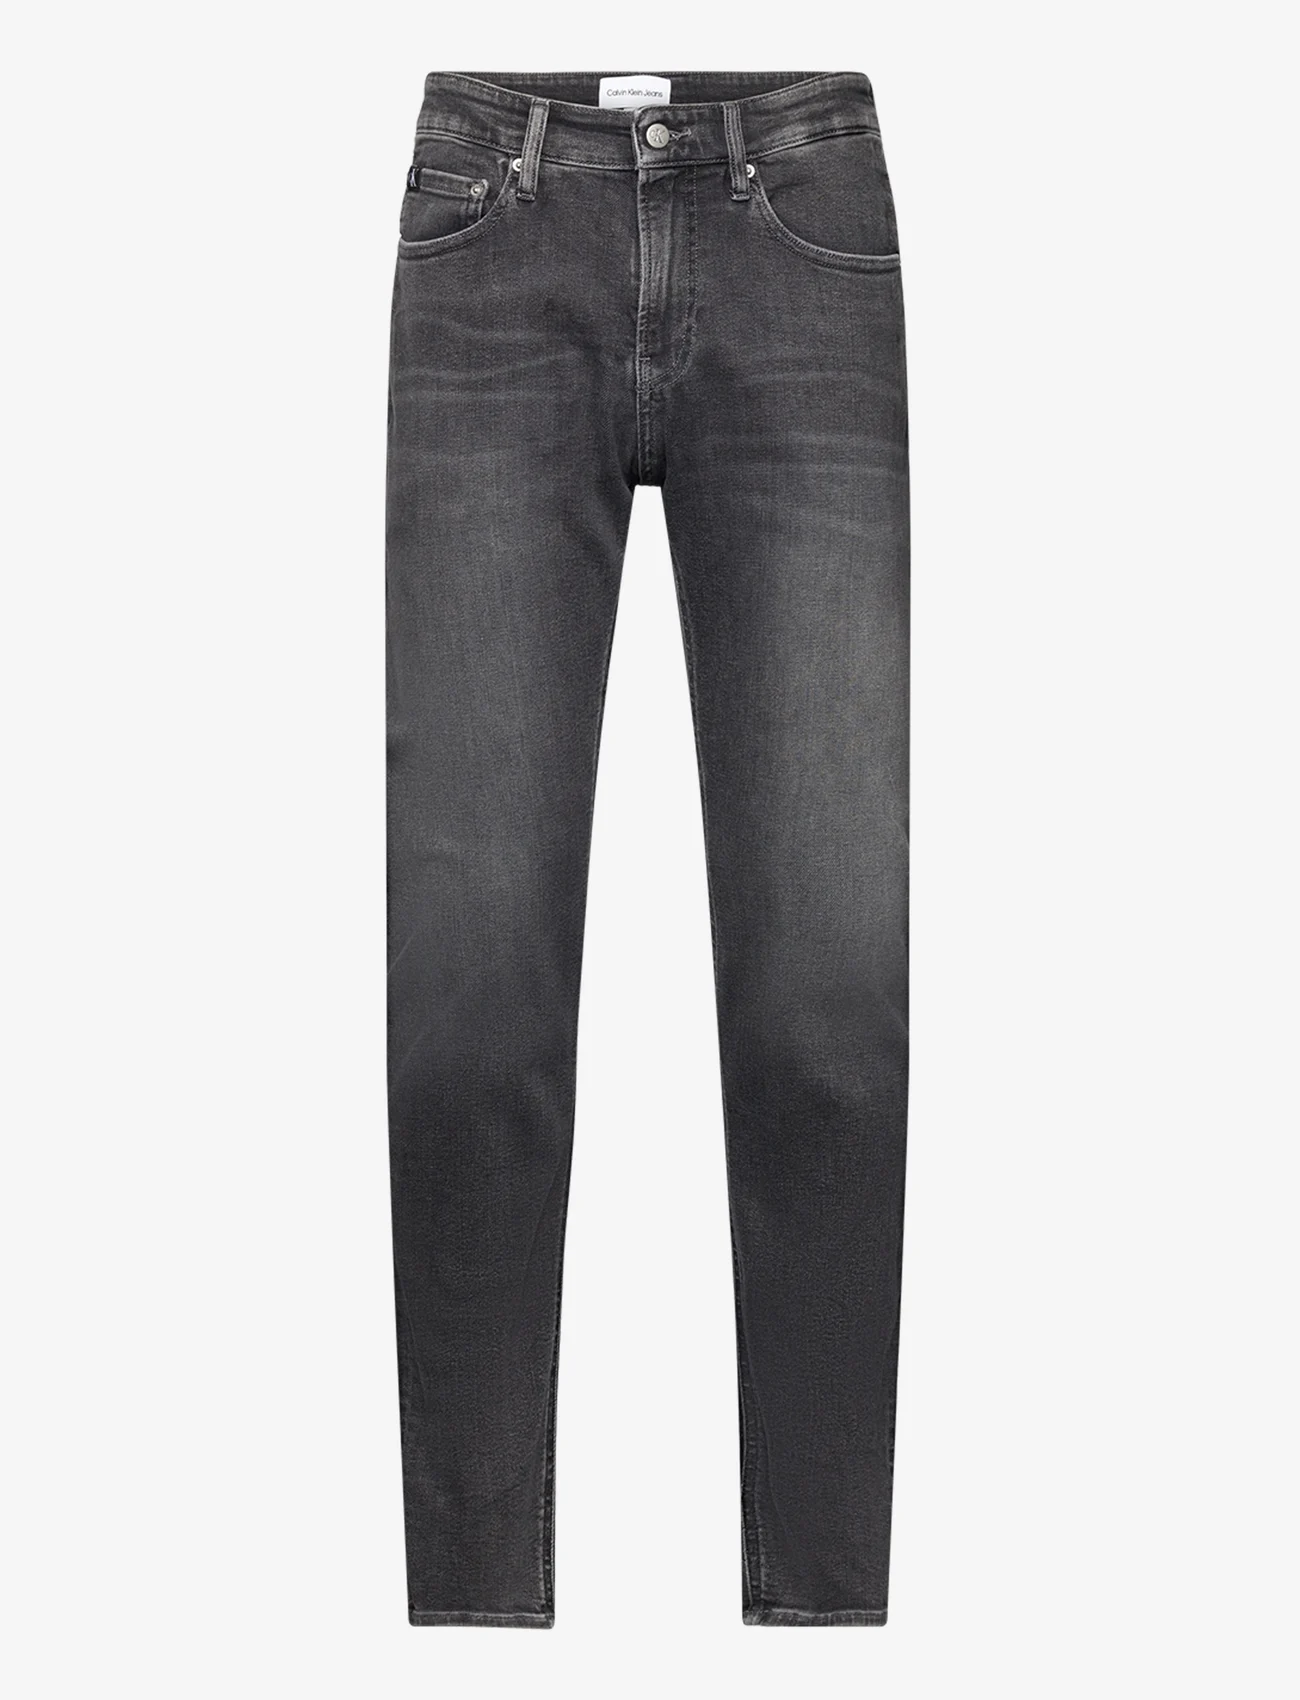 Calvin Klein Jeans - SKINNY - skinny jeans - denim grey - 0